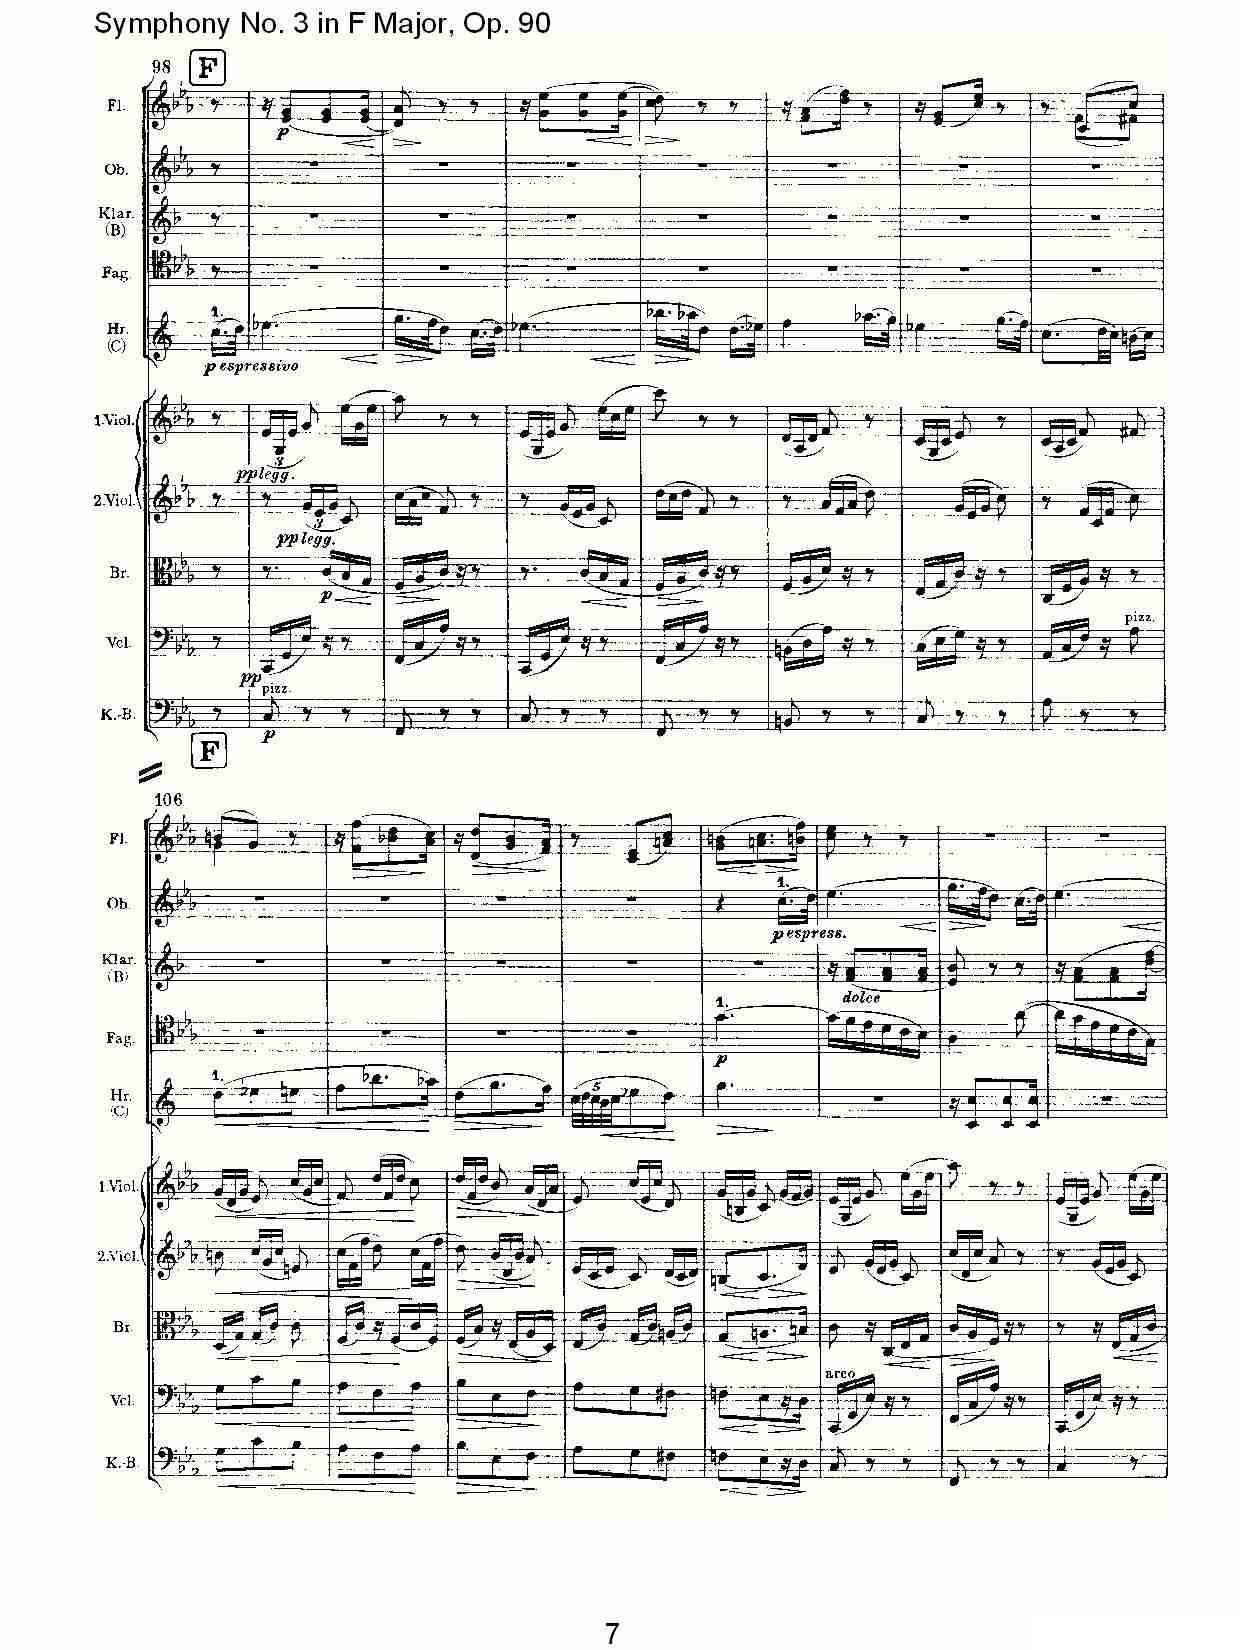 曲谱约翰内斯·勃拉姆斯《F大调第三交响曲, Op.90第三乐章》（第7页）